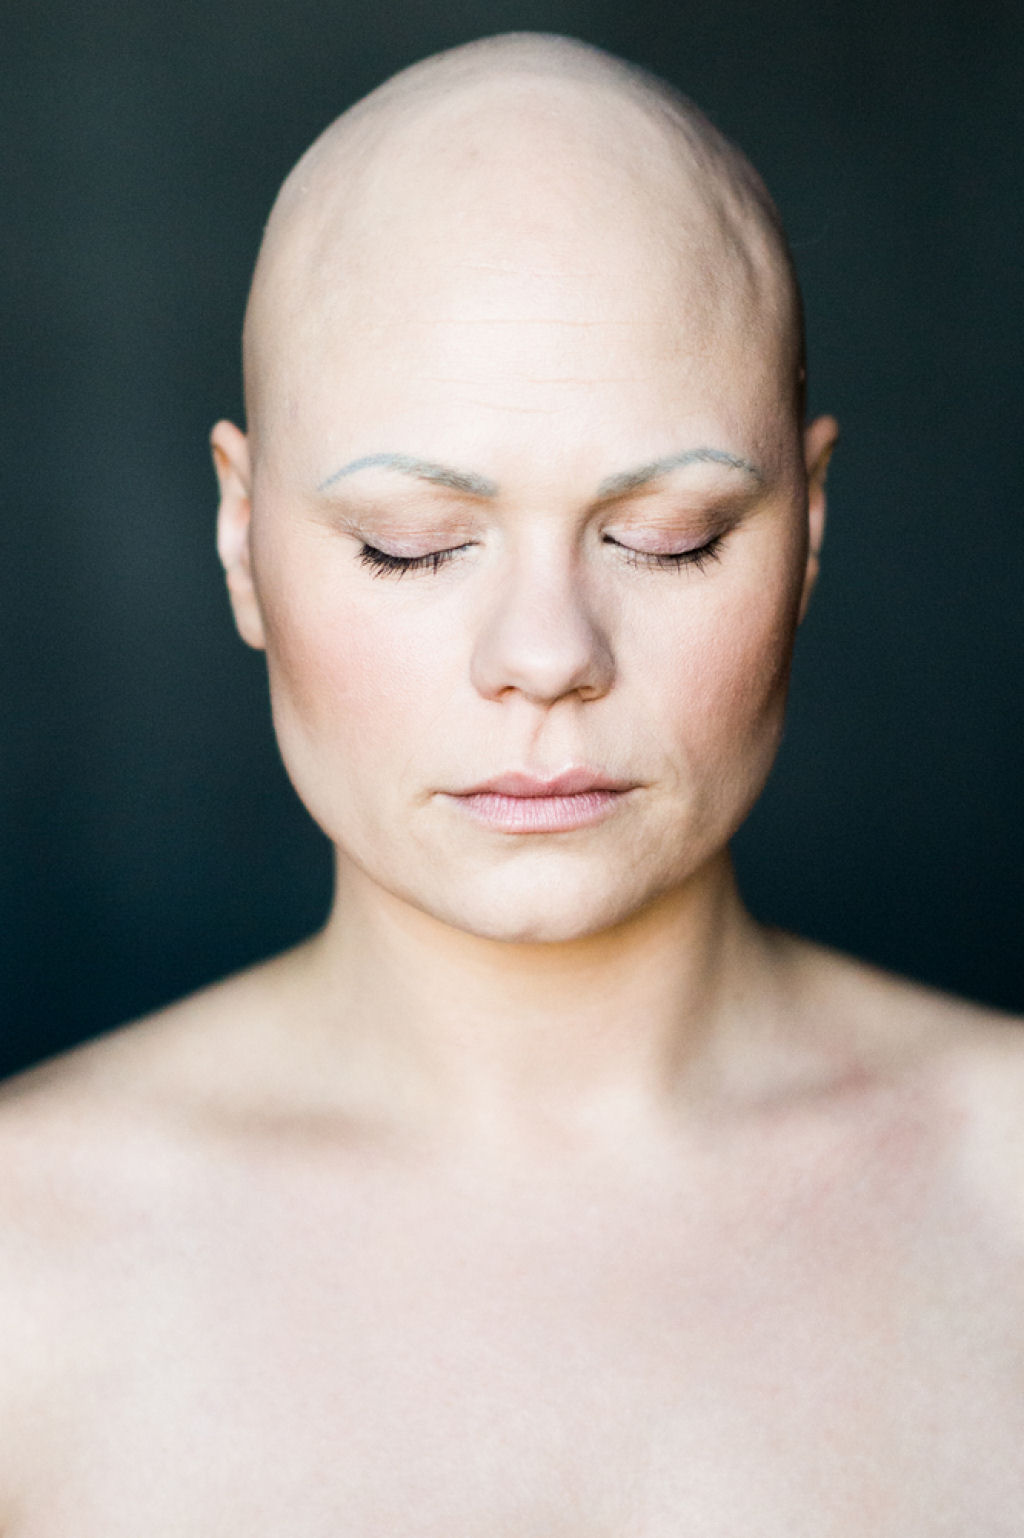 7 retratos impressionantes de mulheres com alopecia redefinem a feminilidade 03